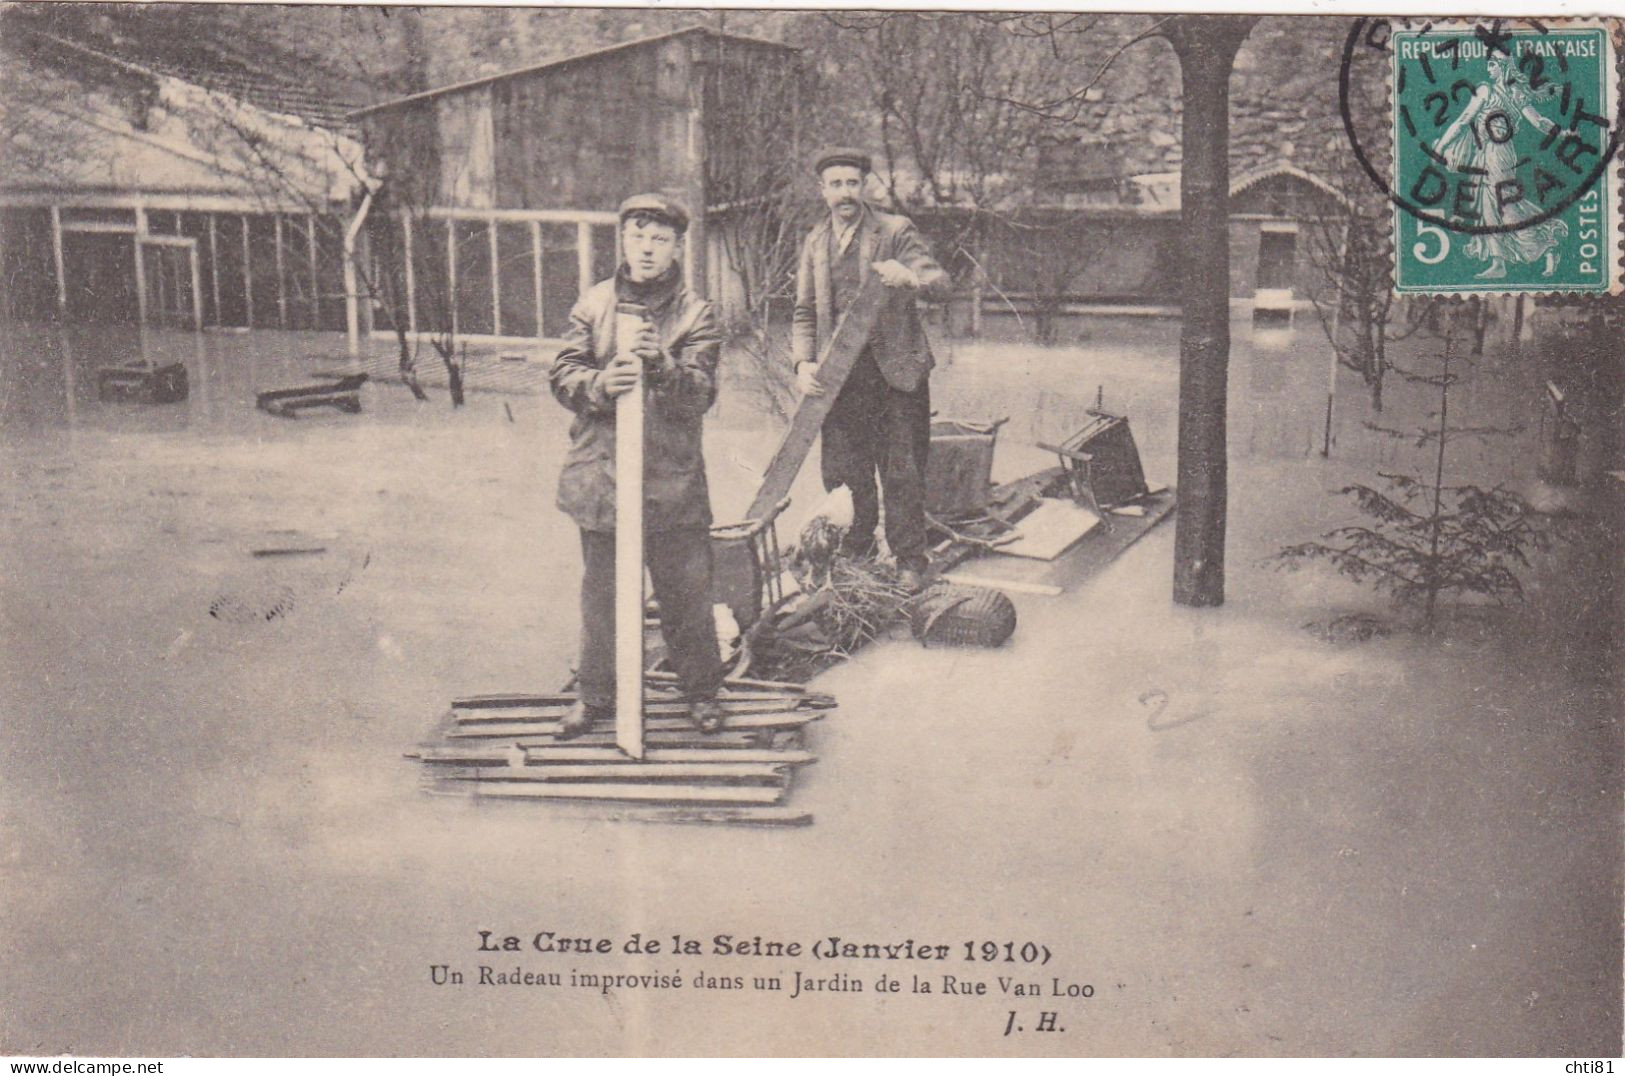 PARIS.......CRUE DE LA SEINE - Überschwemmung 1910